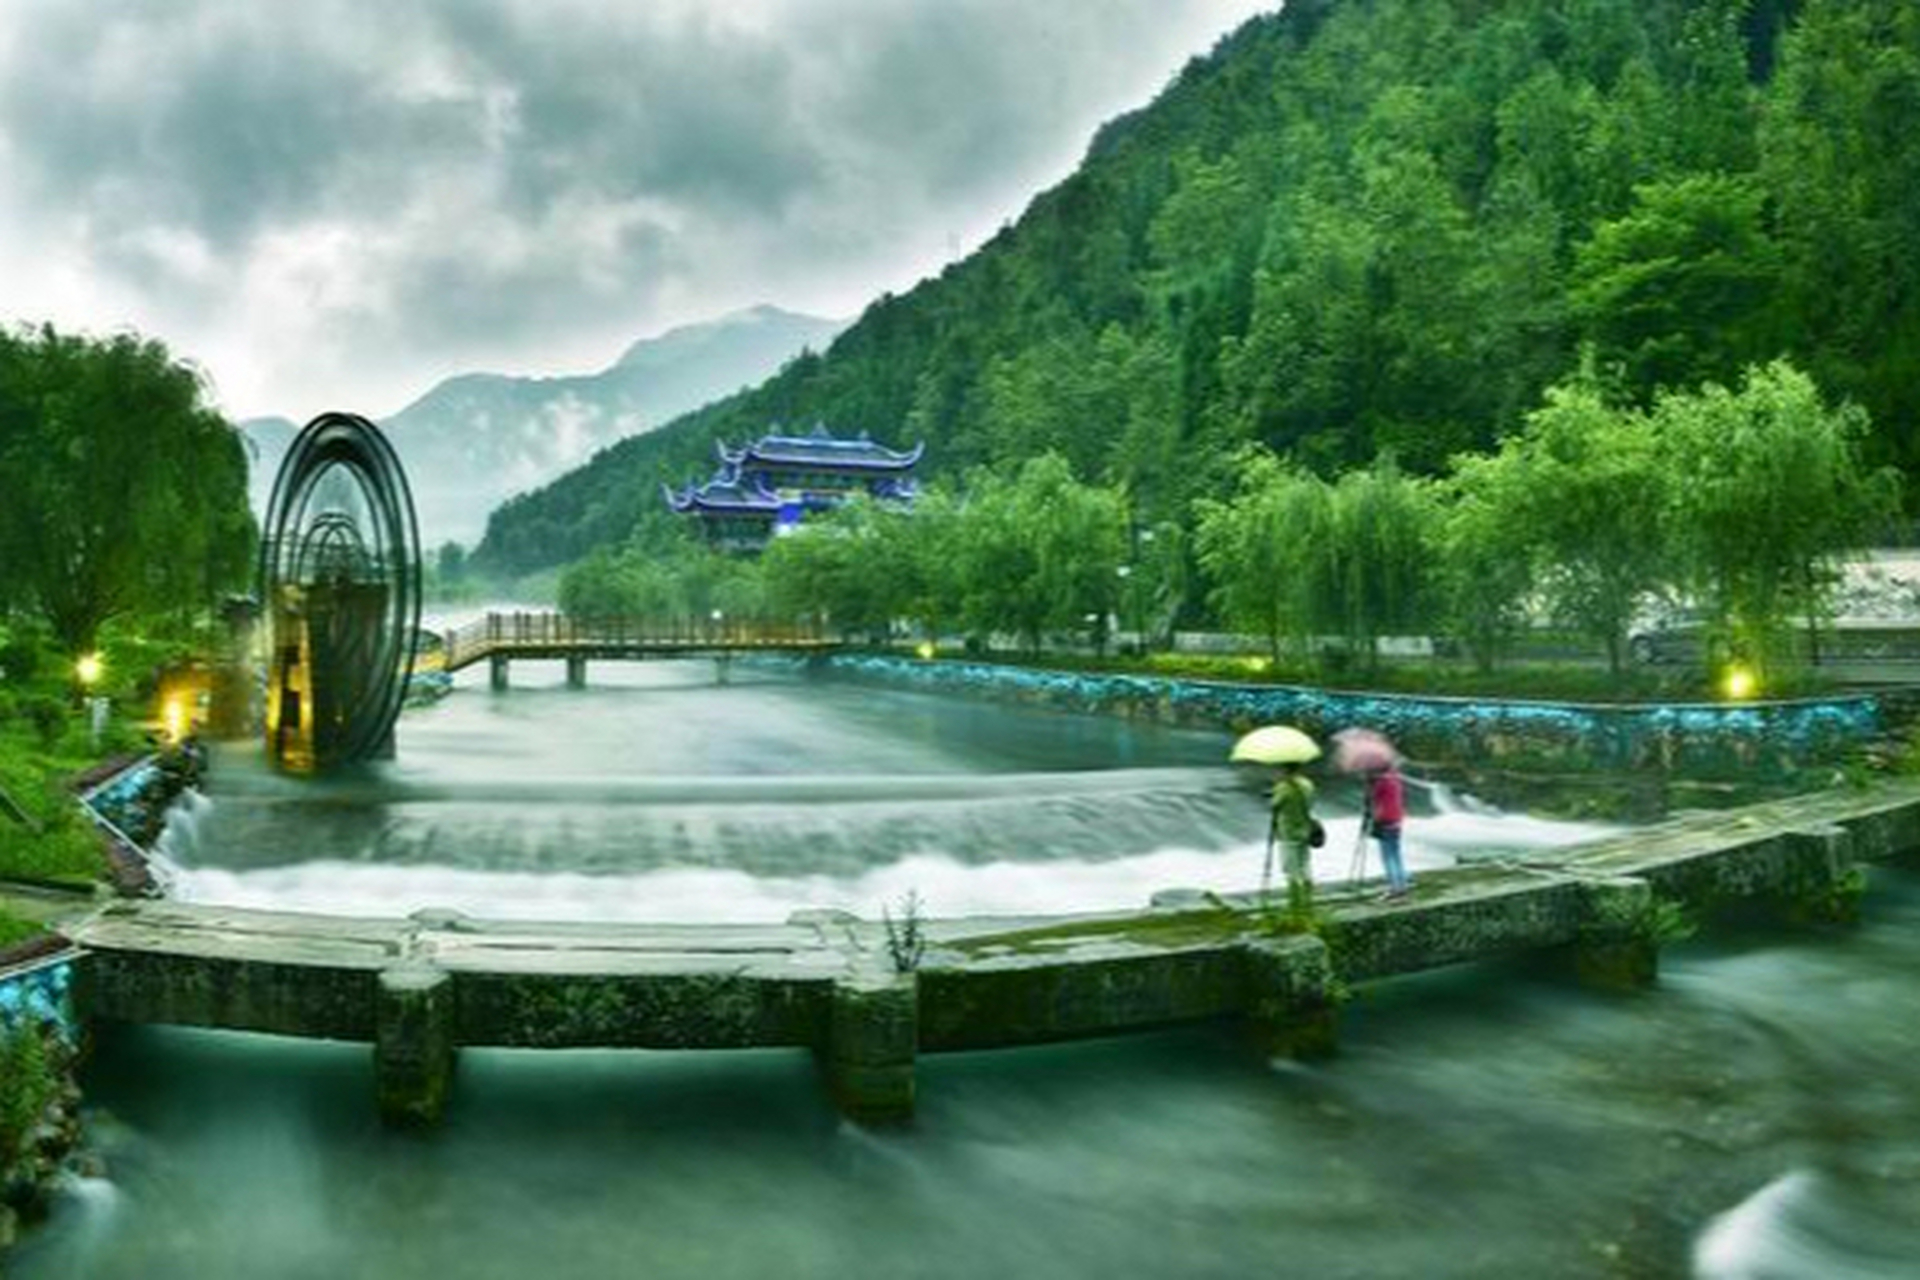 文昌故里:位于四川省越西县中所镇,这里是当地人休闲娱乐的首选地